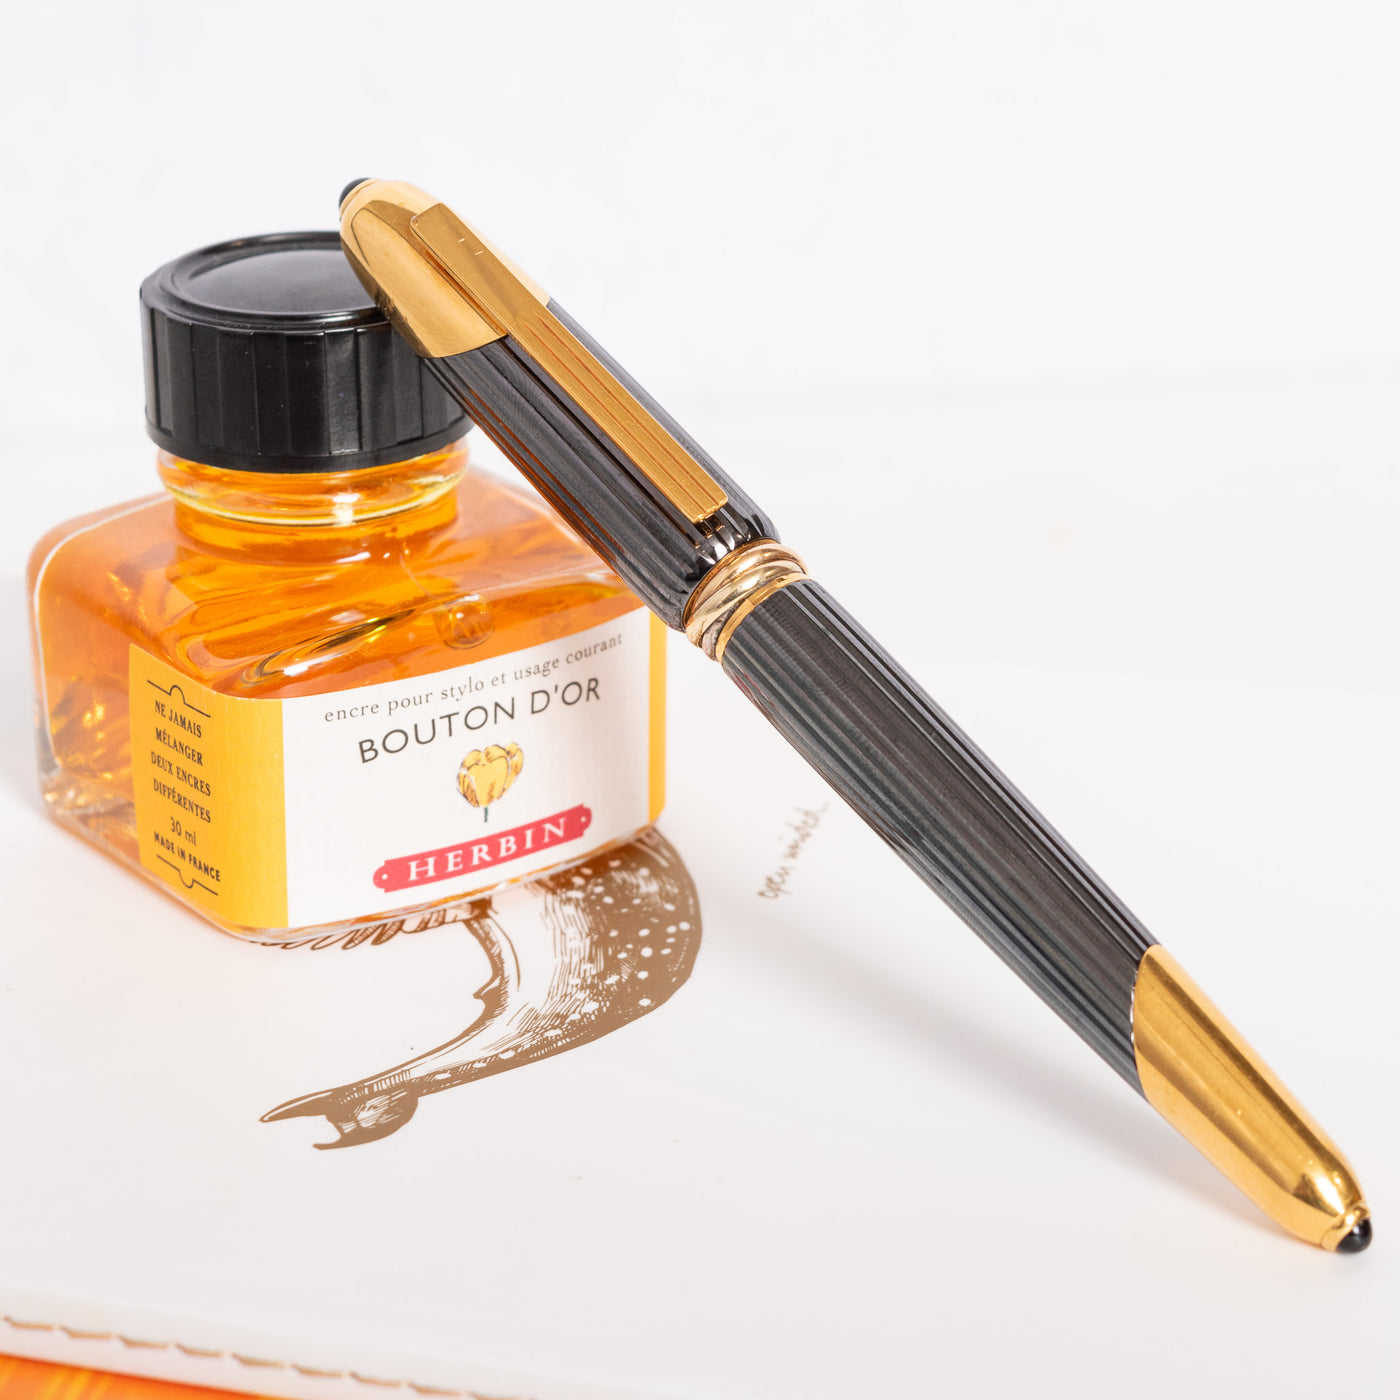 Cartier Cougar Gunmetal Gold Fountain Pen Capped